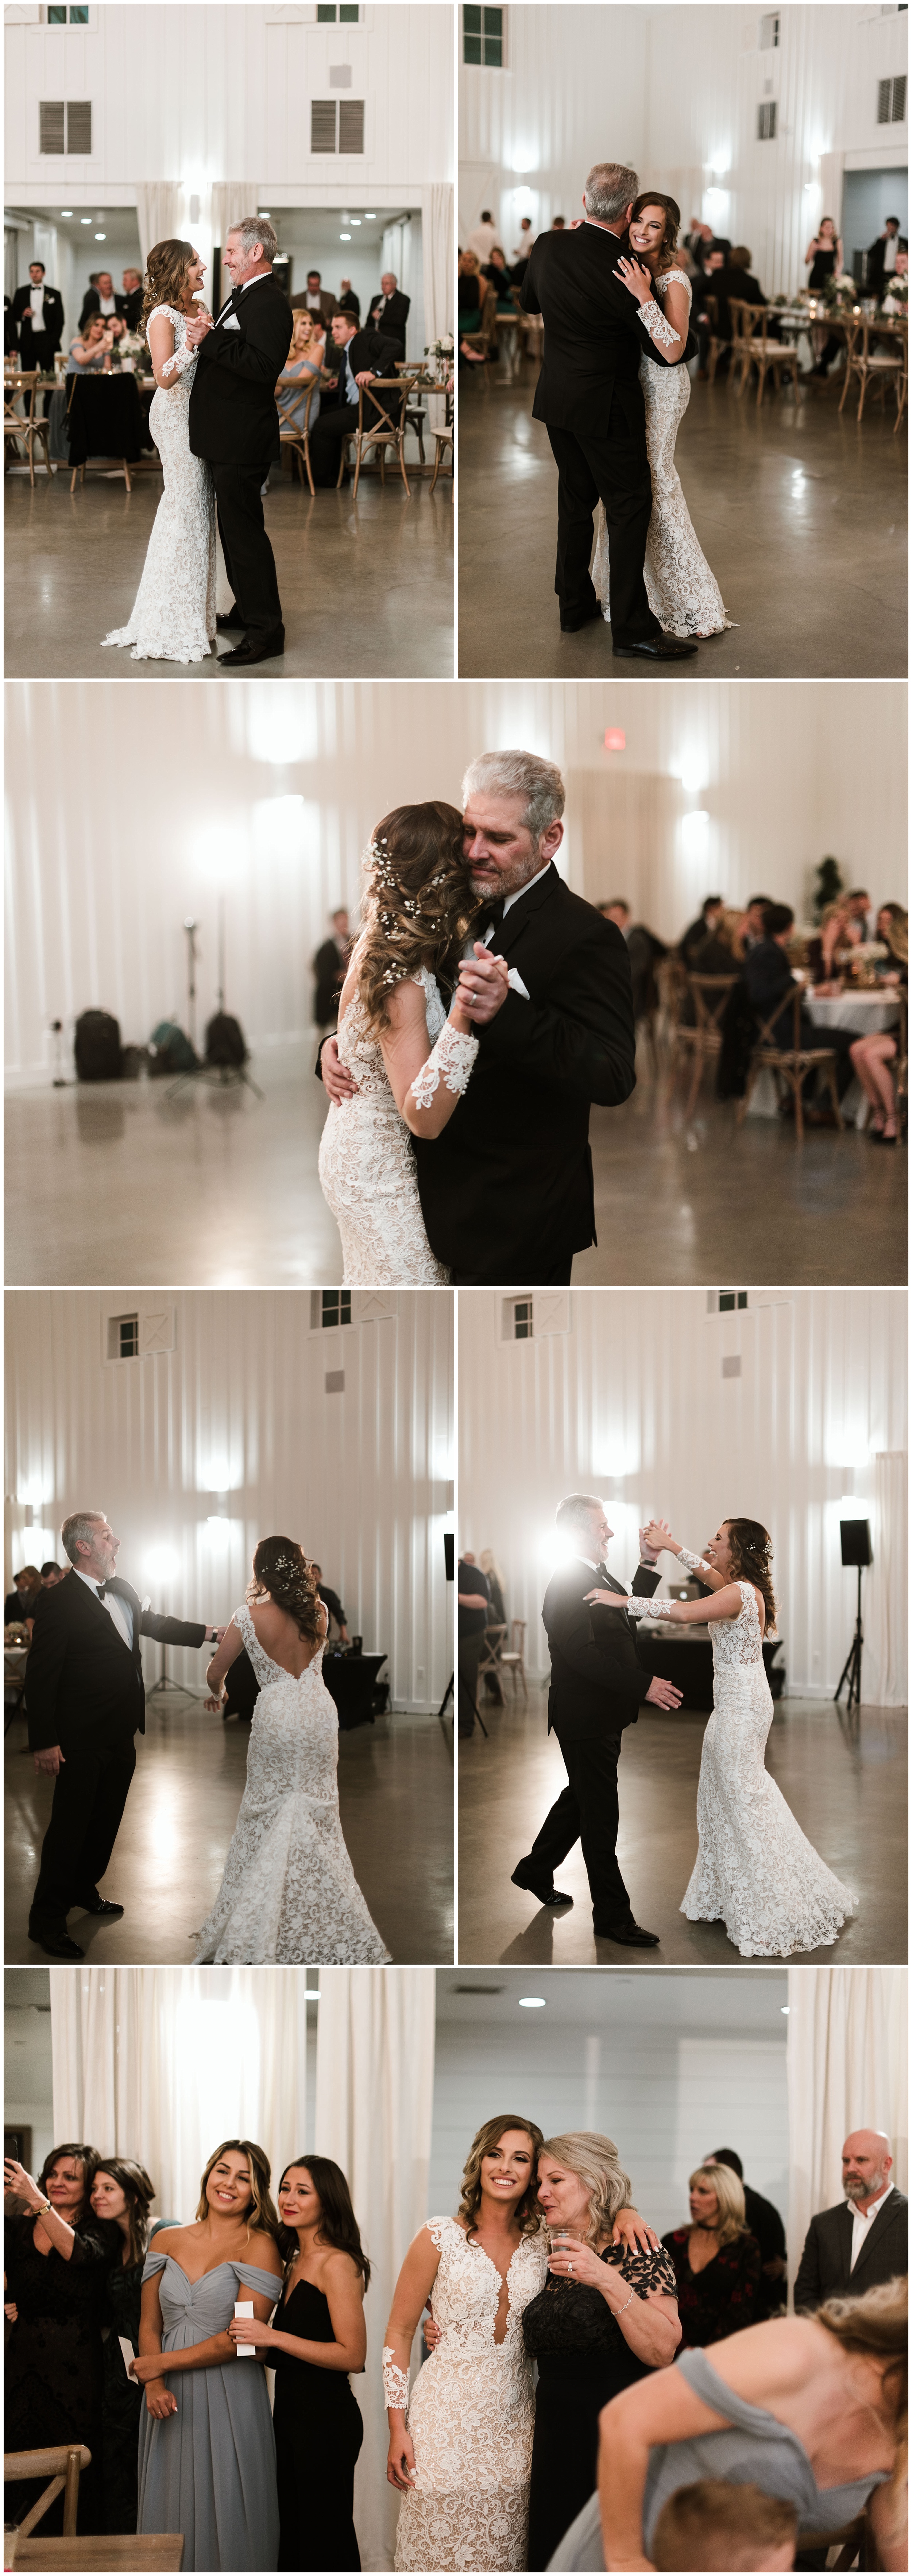  The Farmhouse Wedding | Fort Worth Wedding Photographer | Dallas Wedding Photographer | www.jordanmitchellphotography.com 